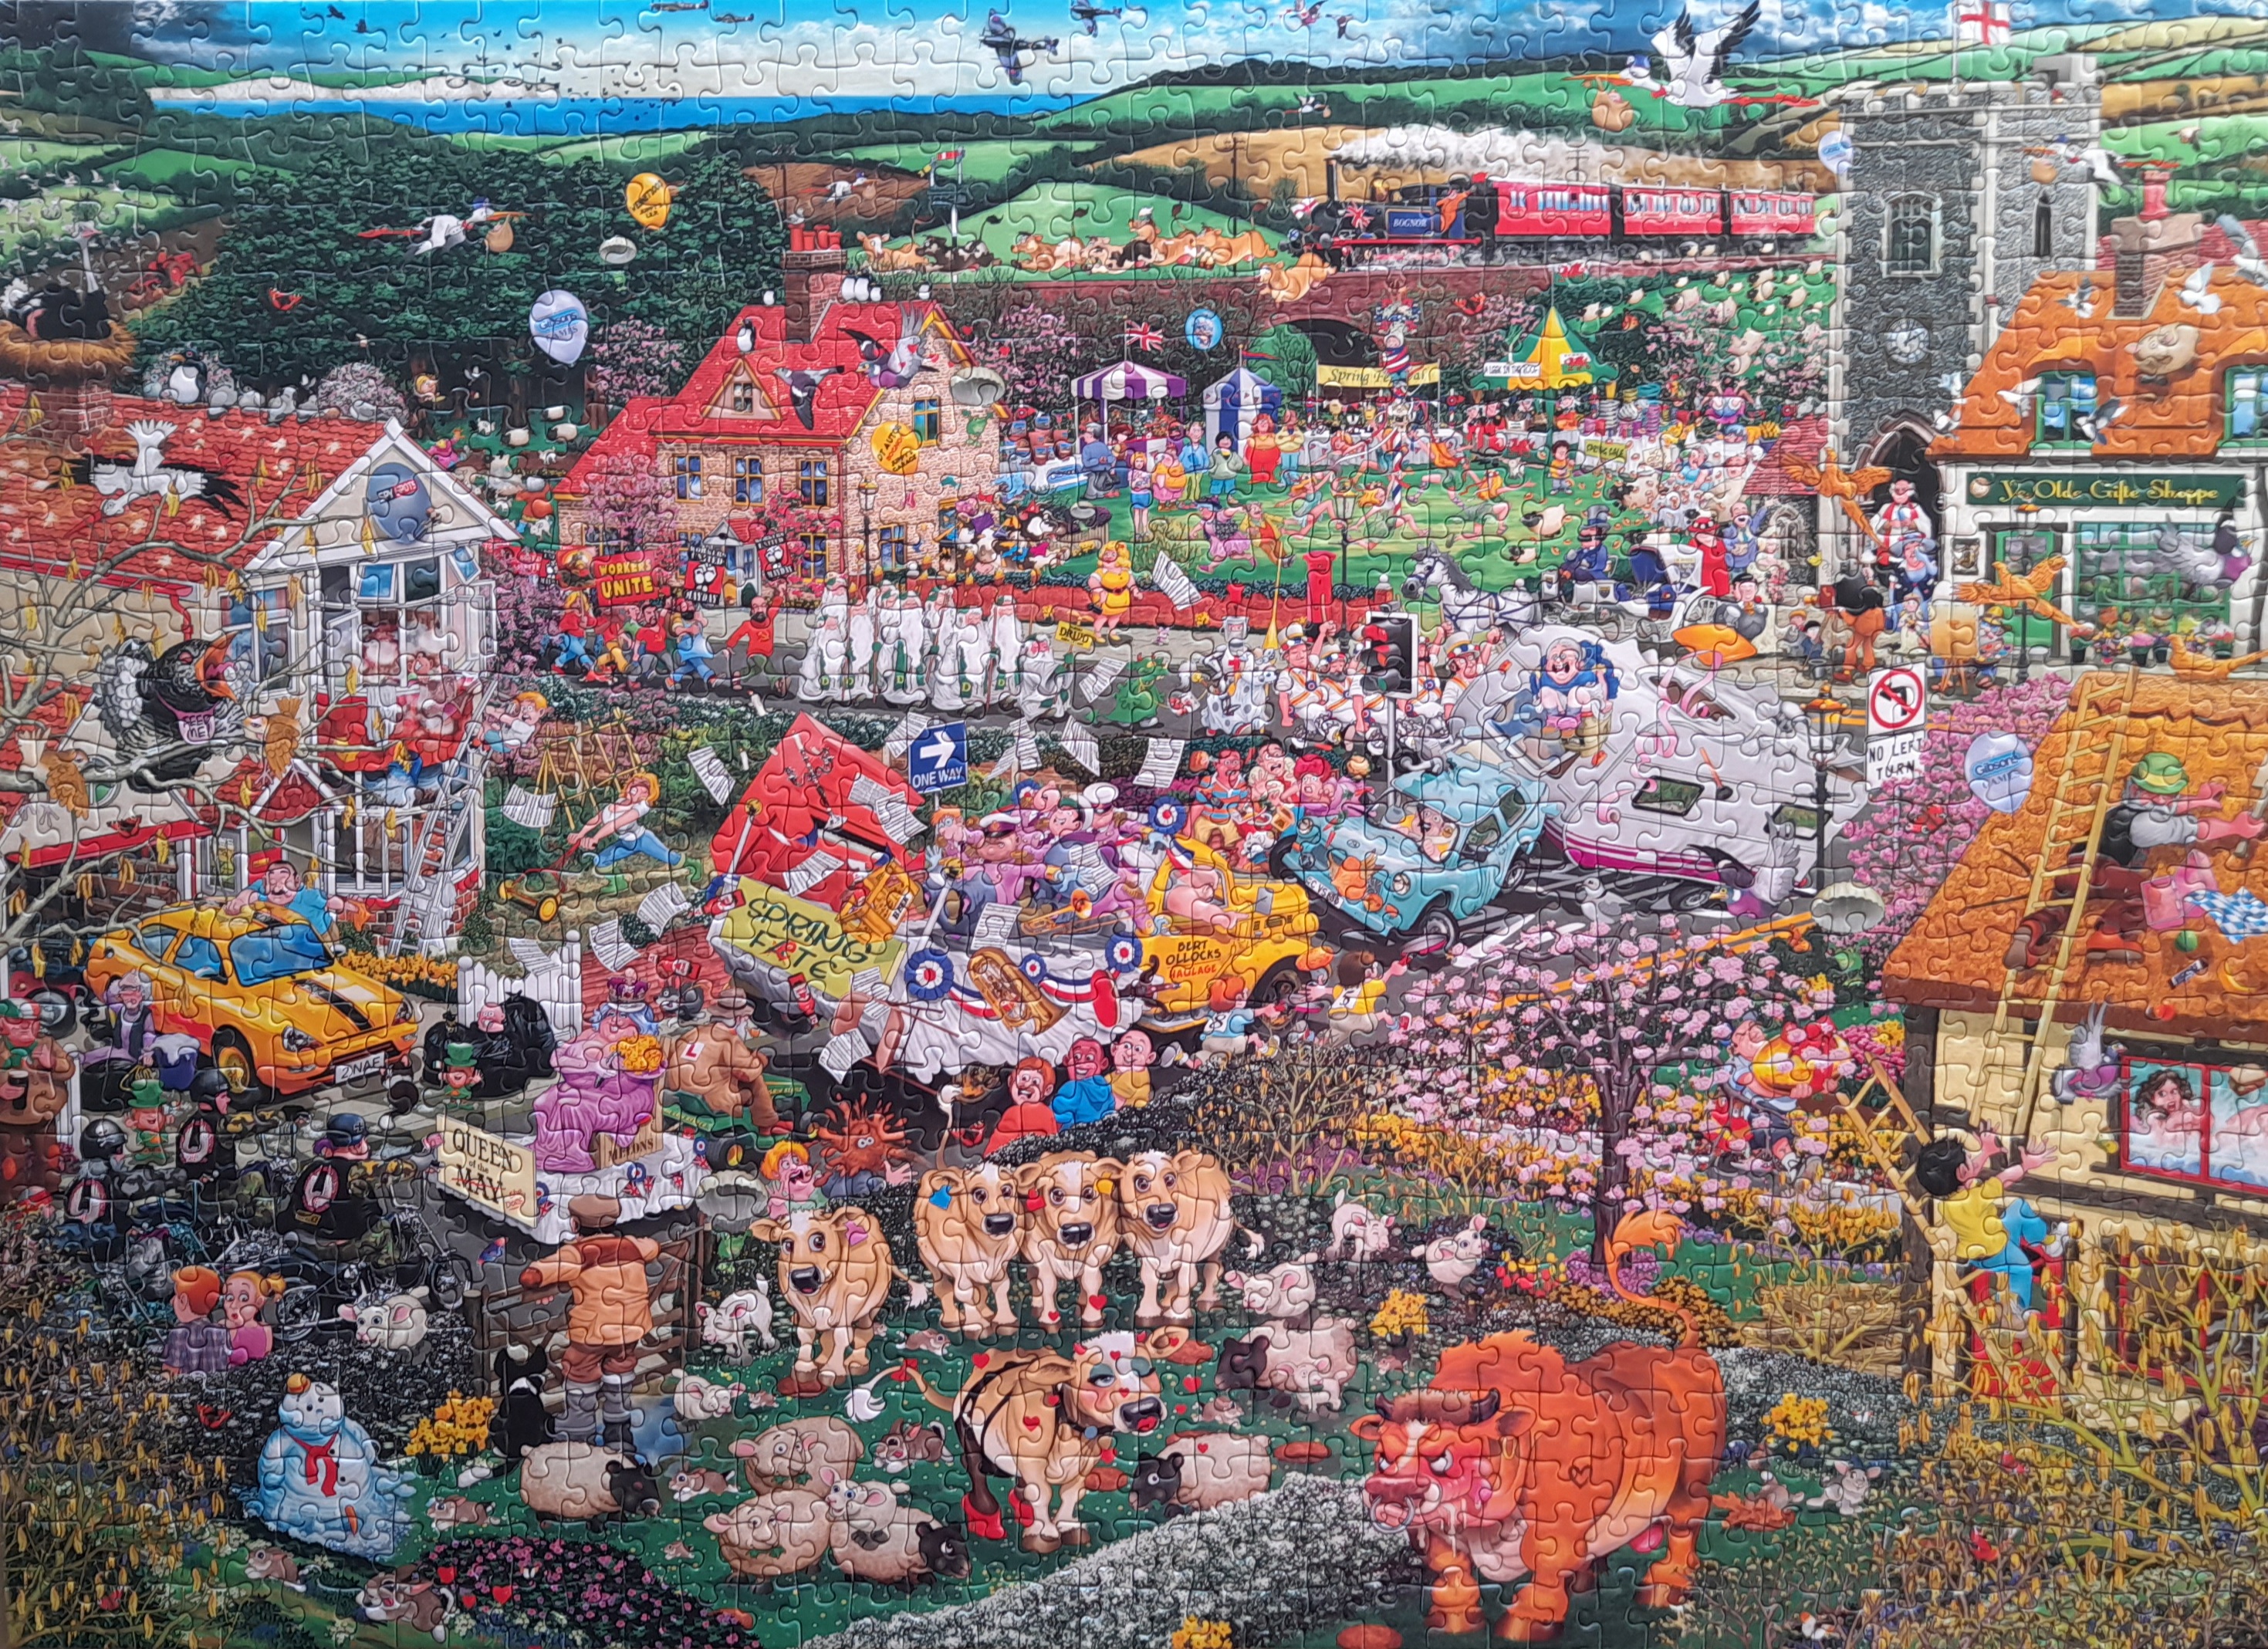 Puzzle Damaged box Jean-Jacques Loup: Apocalypse, 2 000 pieces